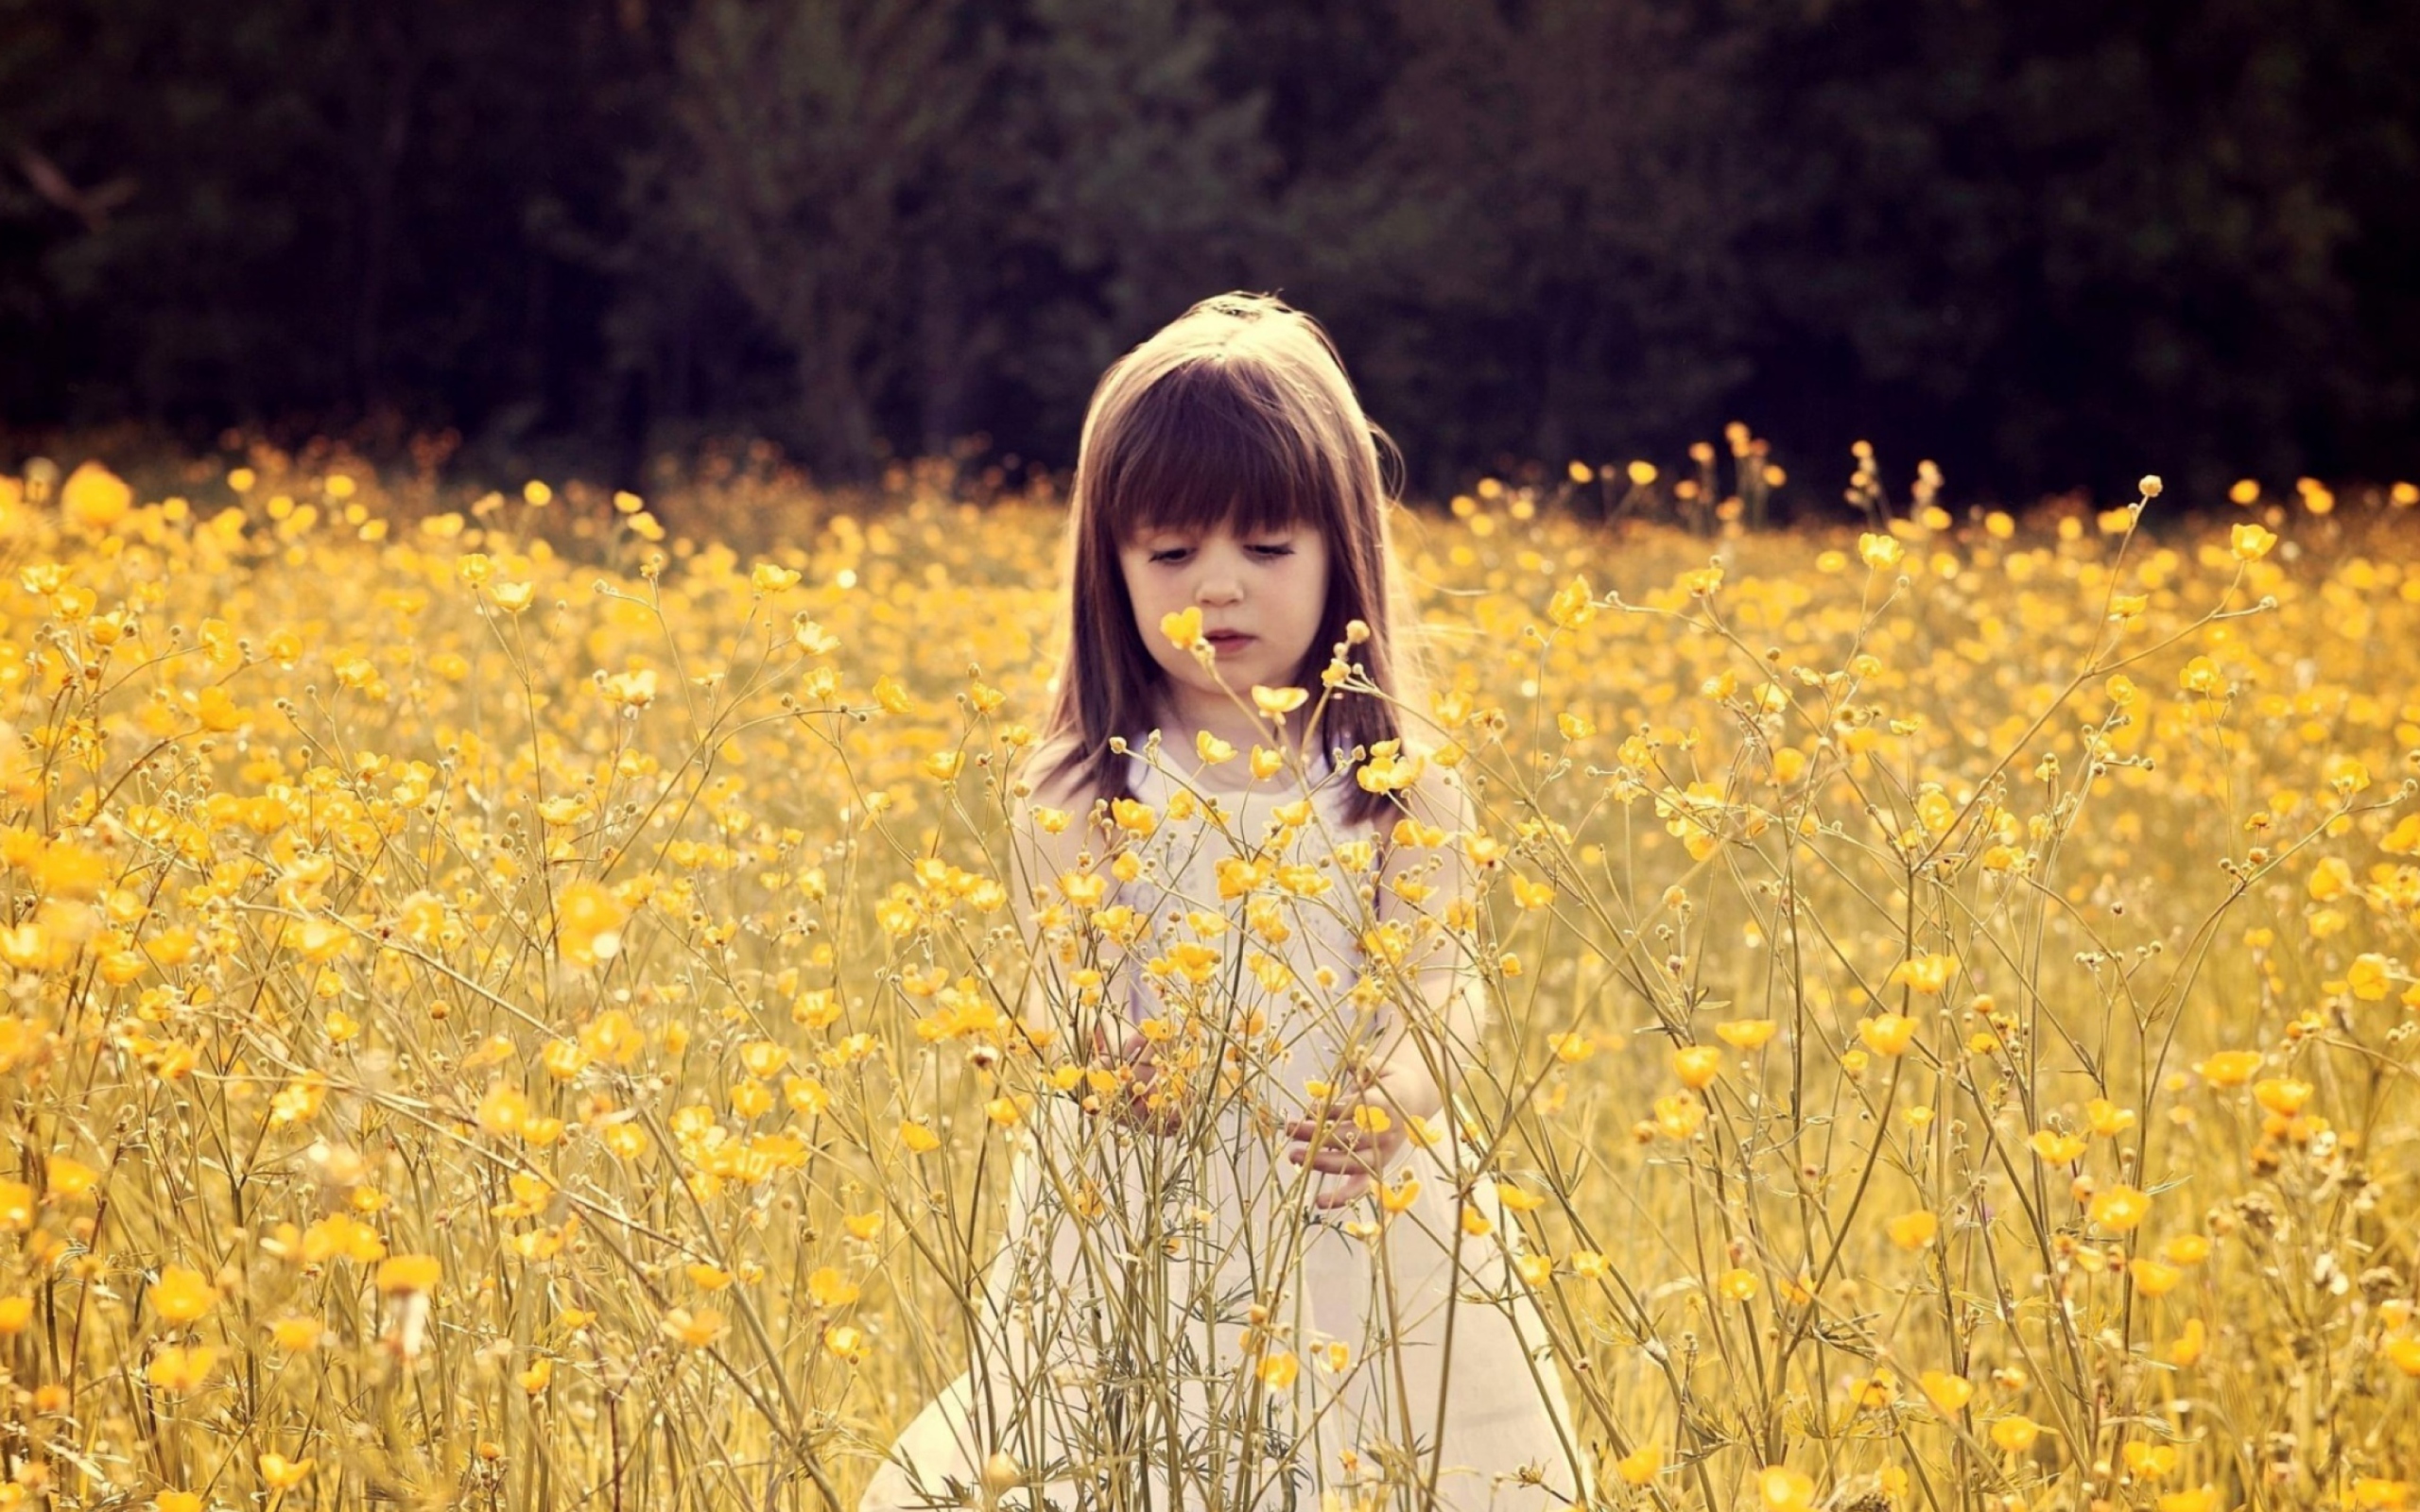 Das Cute Little Girl In Flower Field Wallpaper 2560x1600